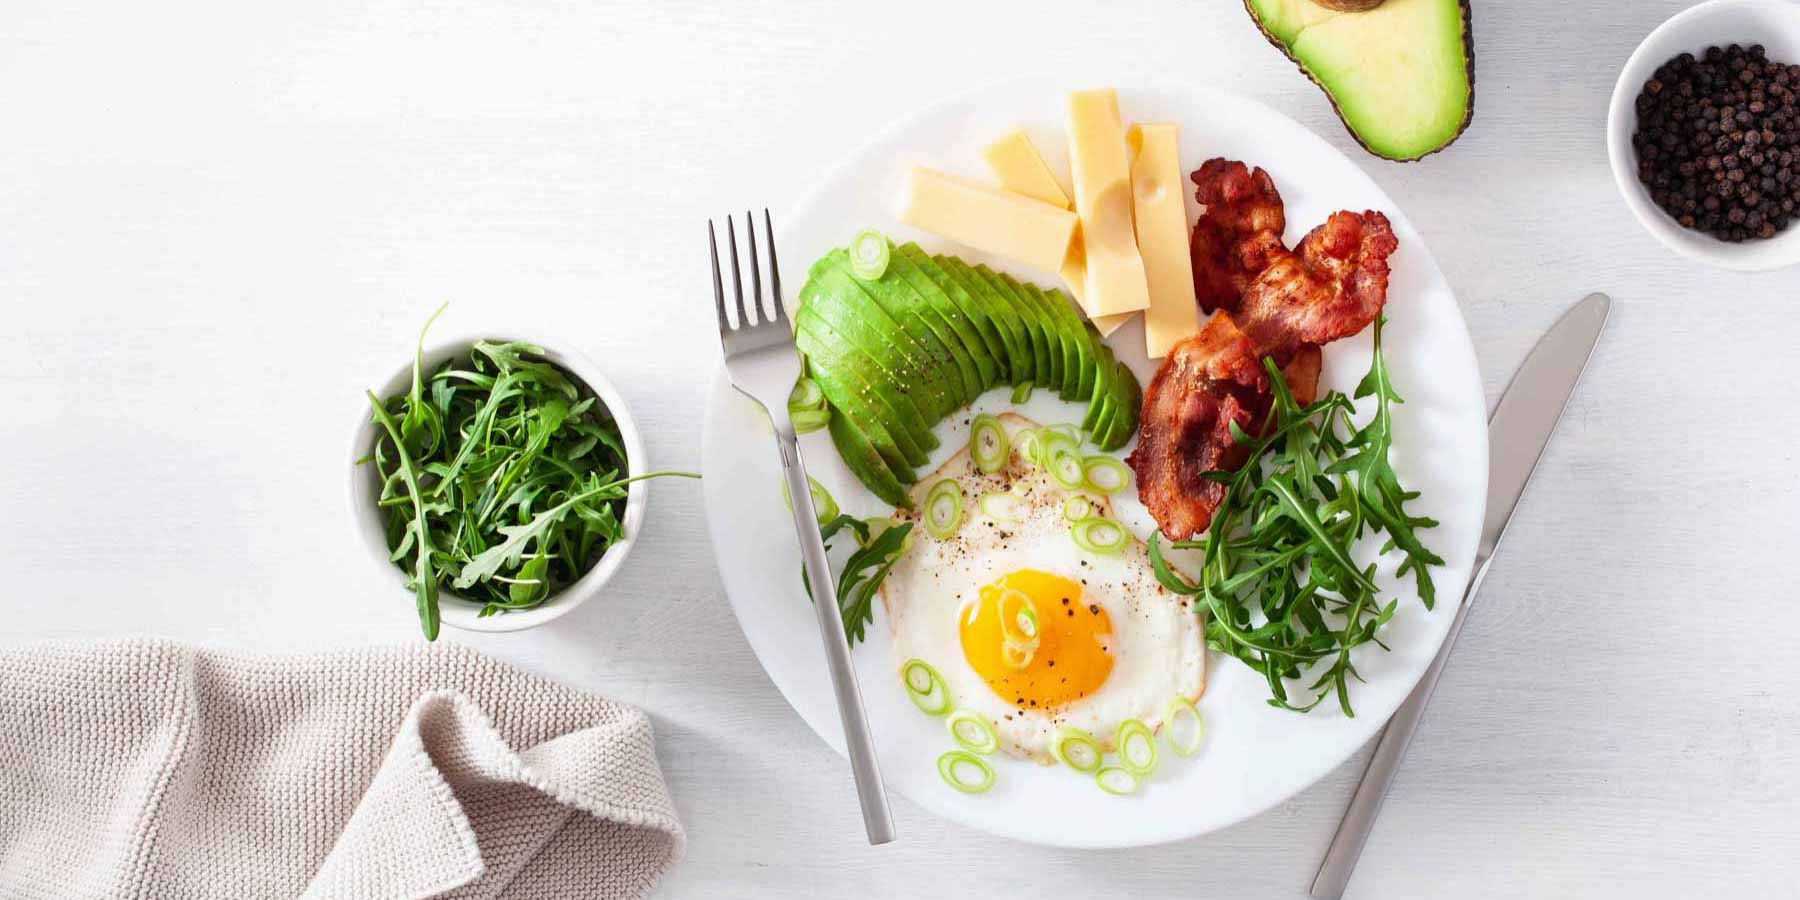 dieta niskowęglowodanowa w cateringu dietetycznym - znajdziesz w niej bekon, awokado, sery i jajka 